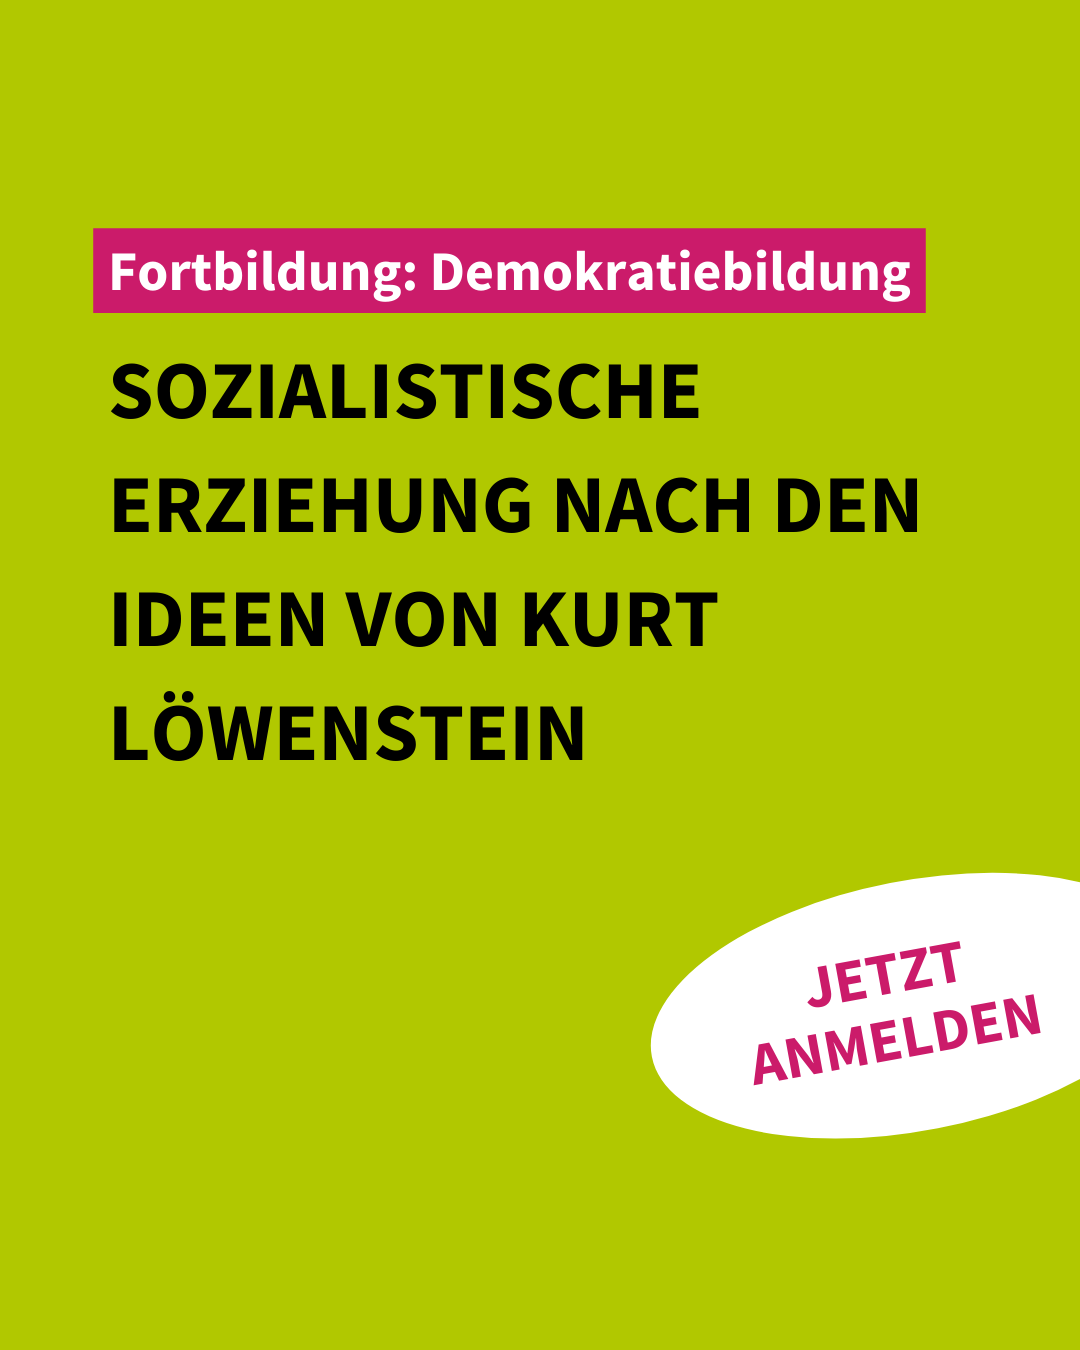 VNB-Fortbildung| Sozialistische Erziehung nach den Ideen von Kurt Löwenstein | Demokratiebildung